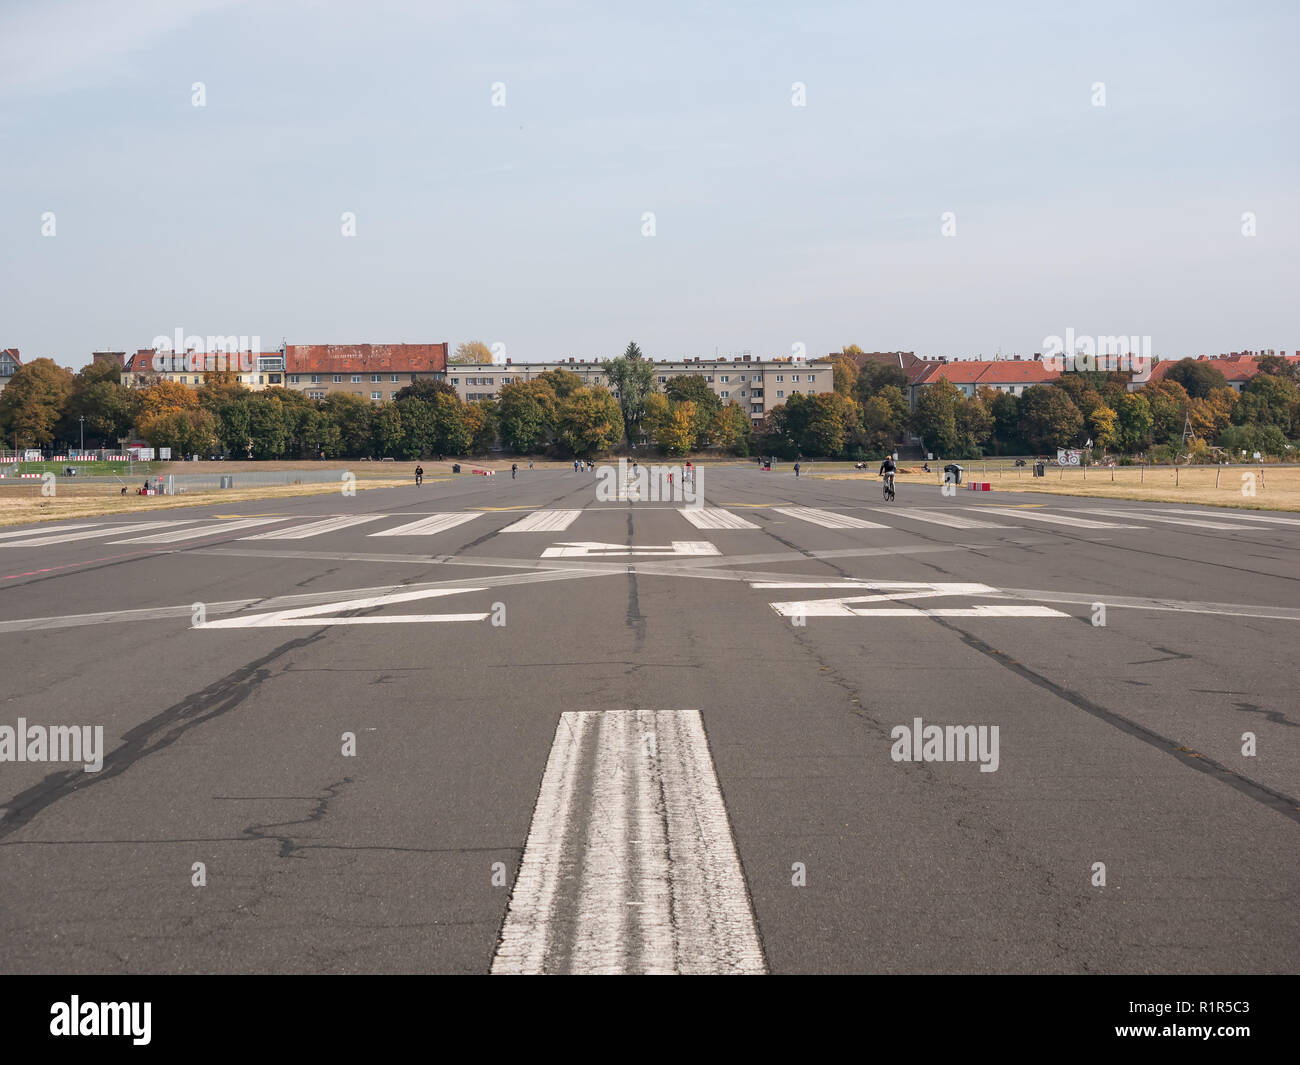 BERLIN, GERMANY - OCTOBER 10, 2018: Former Take-off Runway In Public City Park Tempelhofer Feld, Former Tempelhof Airport In Berlin, Germany Stock Photo